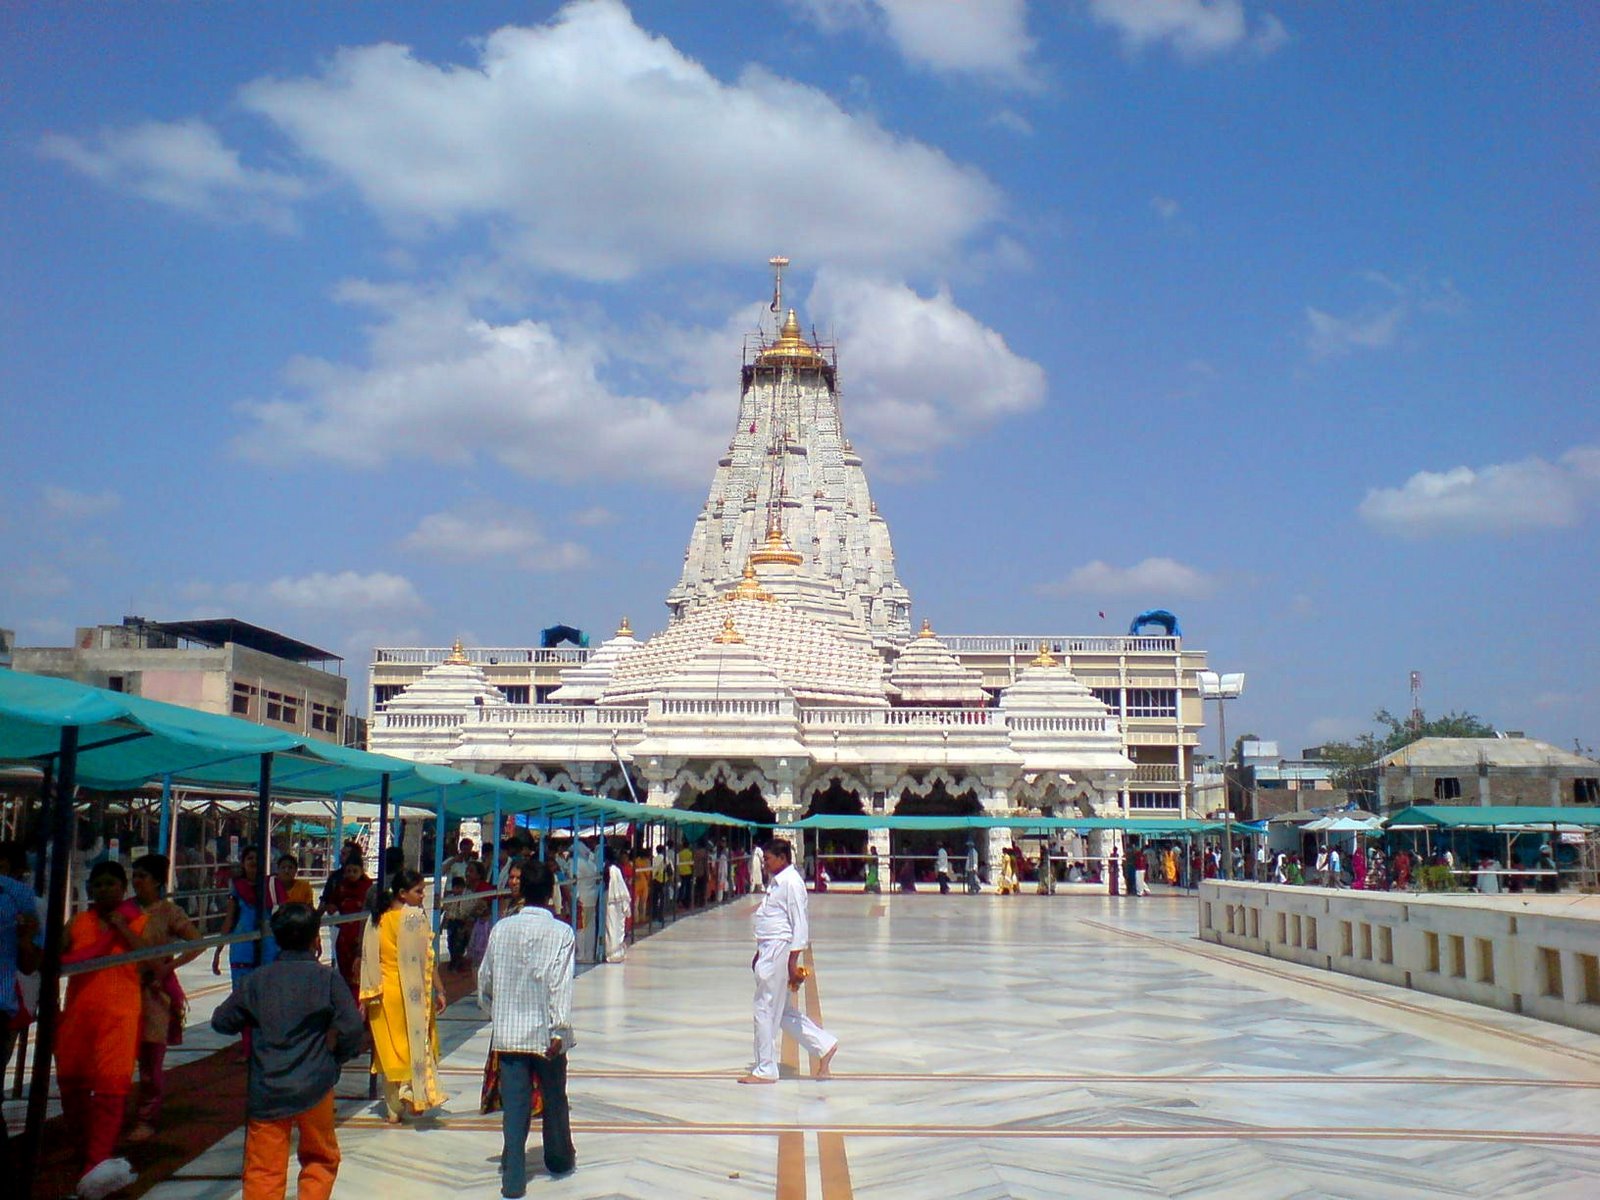 http://4.bp.blogspot.com/-v75E2xkr14A/T5zONkqNisI/AAAAAAAABWg/b6CaEdzaZM4/s1600/Places-Of-Tourism-Ambaji-Temple-Gujarat-India.JPG